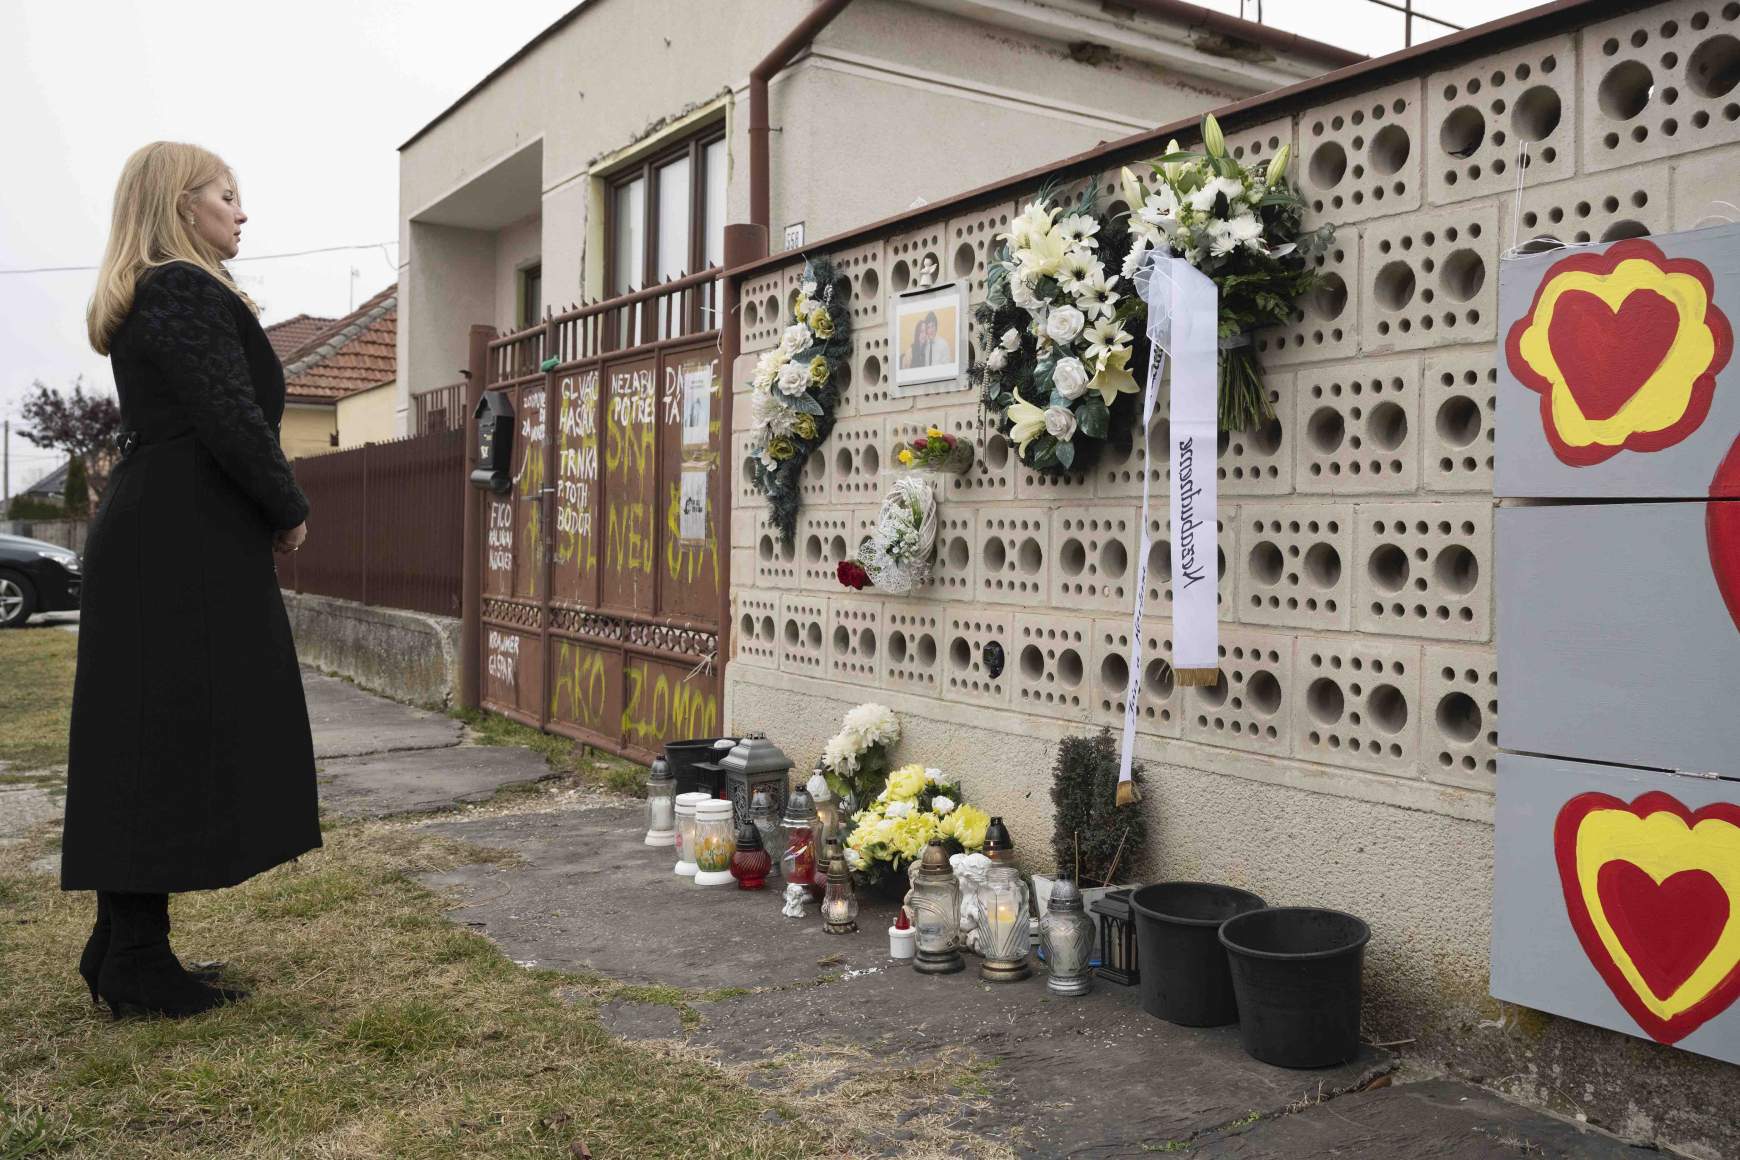 Az államfő virágot helyezett el, és gyertyát gyújtott annak a háznak a kerítésénél, ahol a fiatal párt 2018-ban meggyilkolták. 